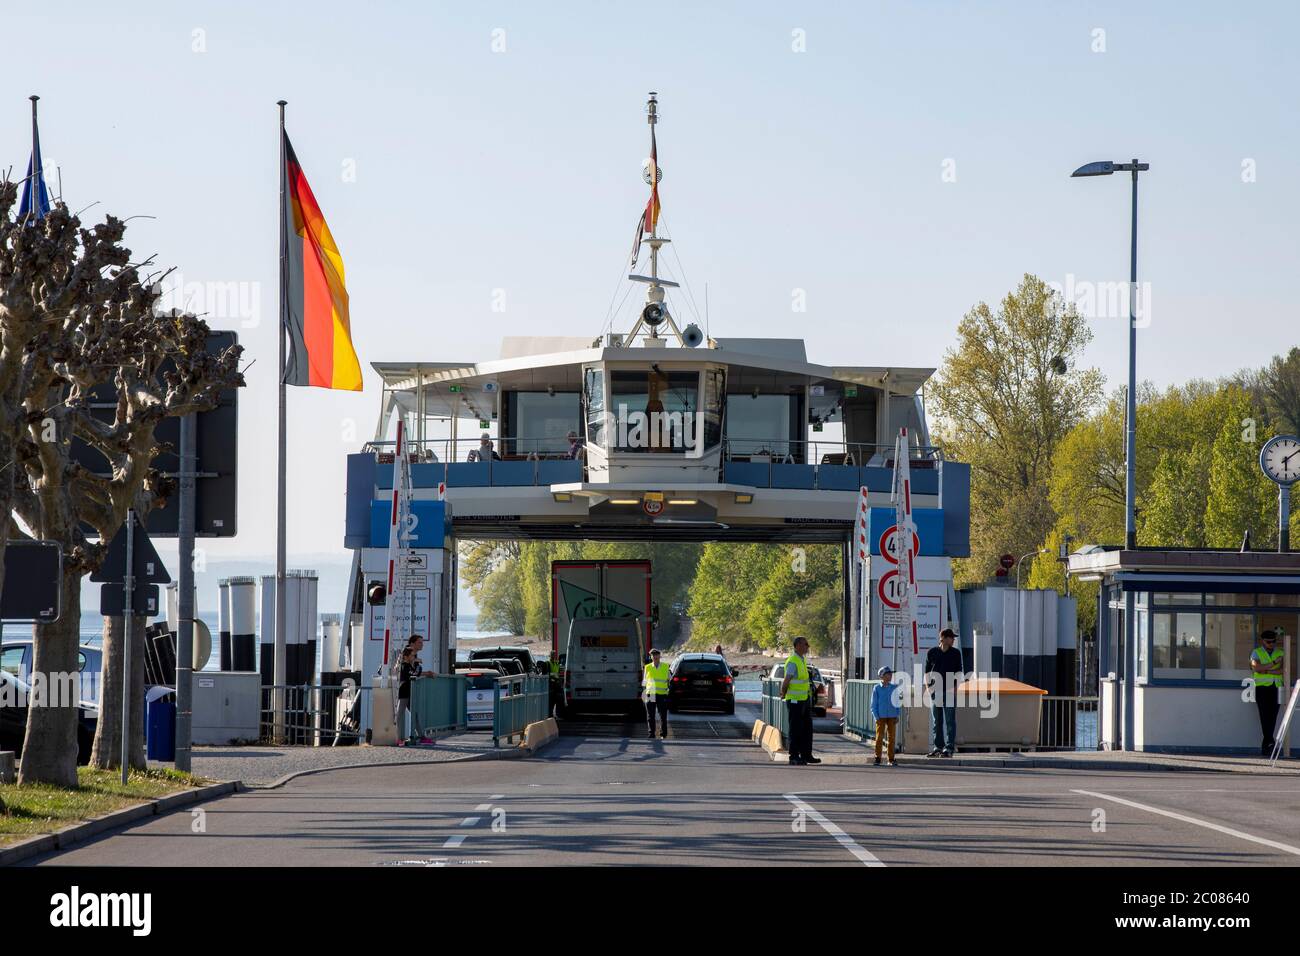 Corona-Pandemie: Einbruch der Fahrgastzahlen im wichtigen Fährverkehr Konstanz-Meersburg. Meersburg, 22.04.2020 Stock Photo